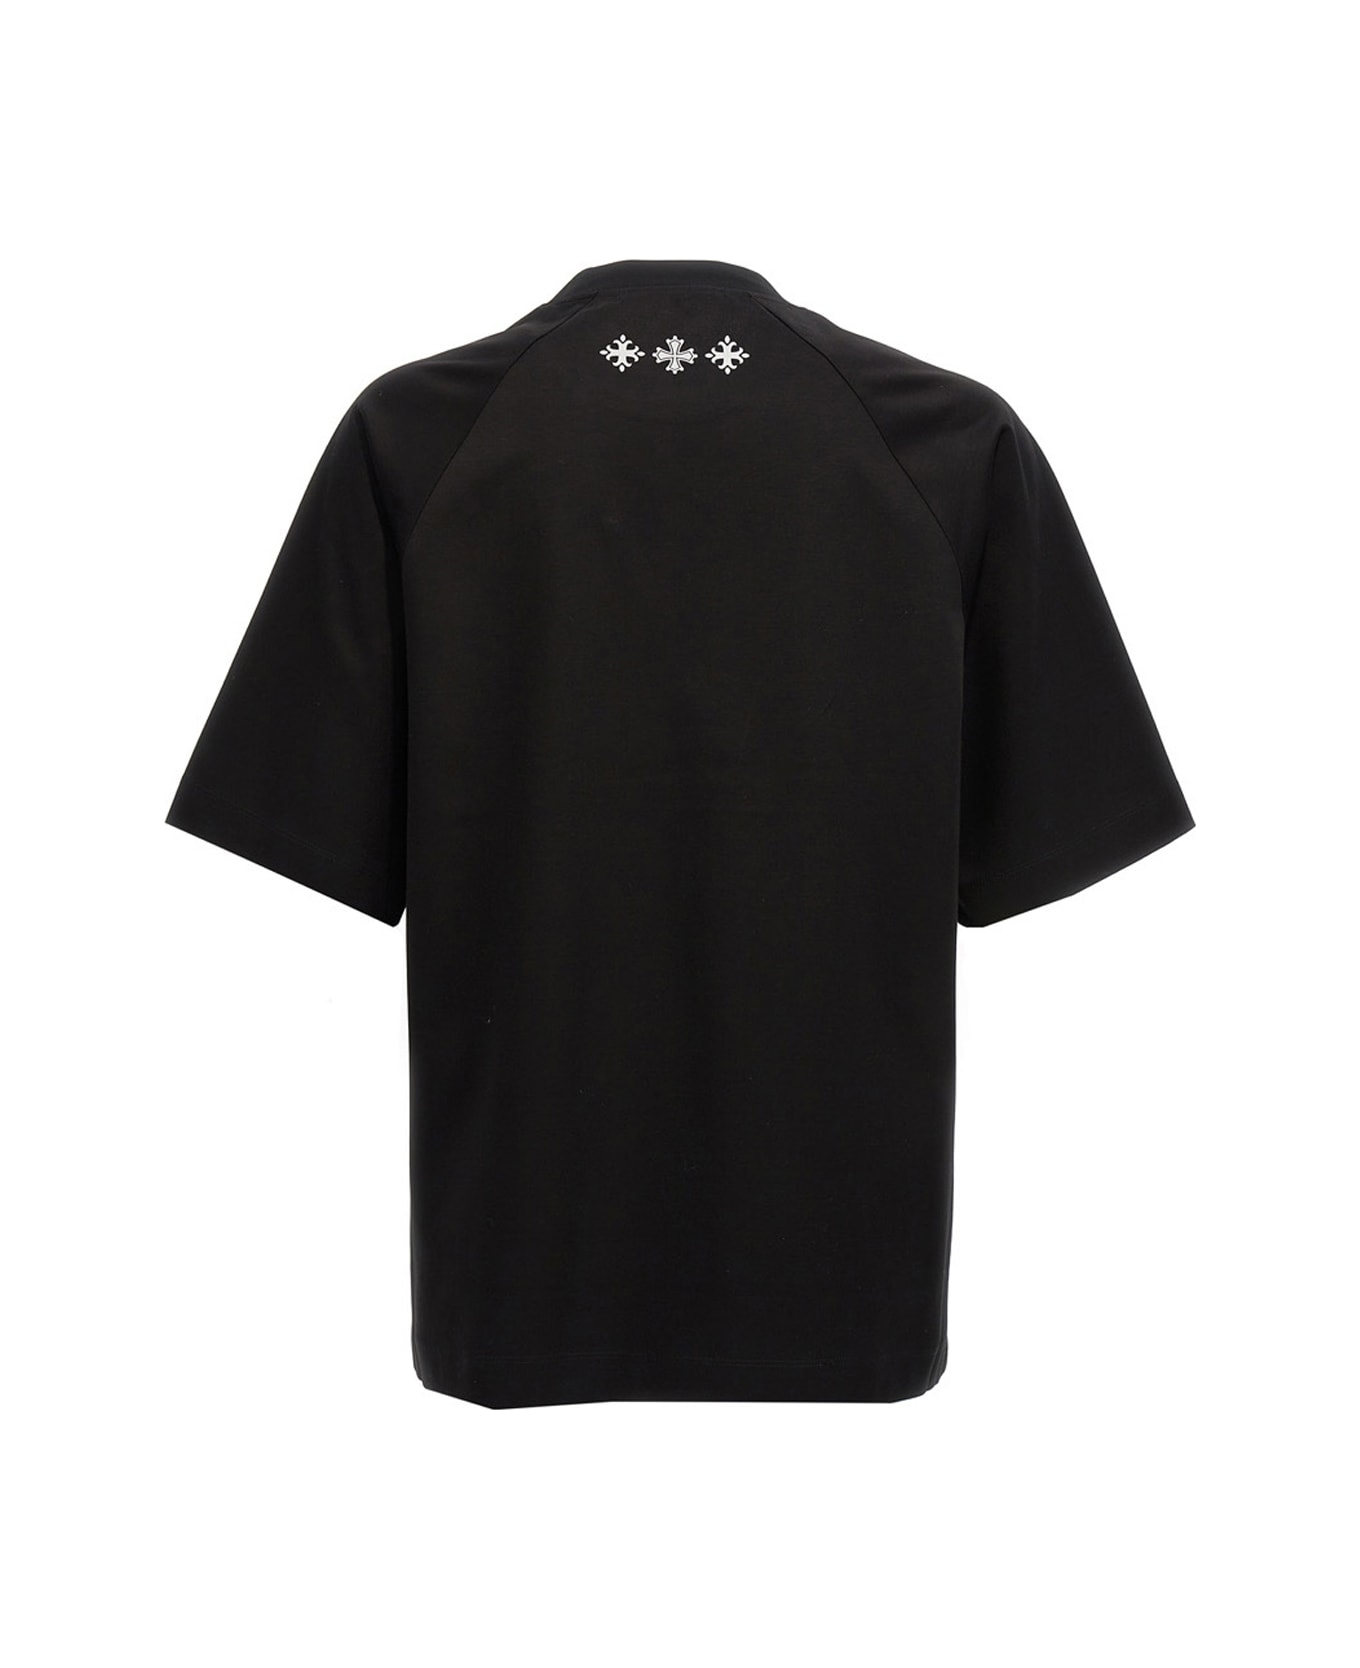 TATRAS 'jani' T-shirt - Black  